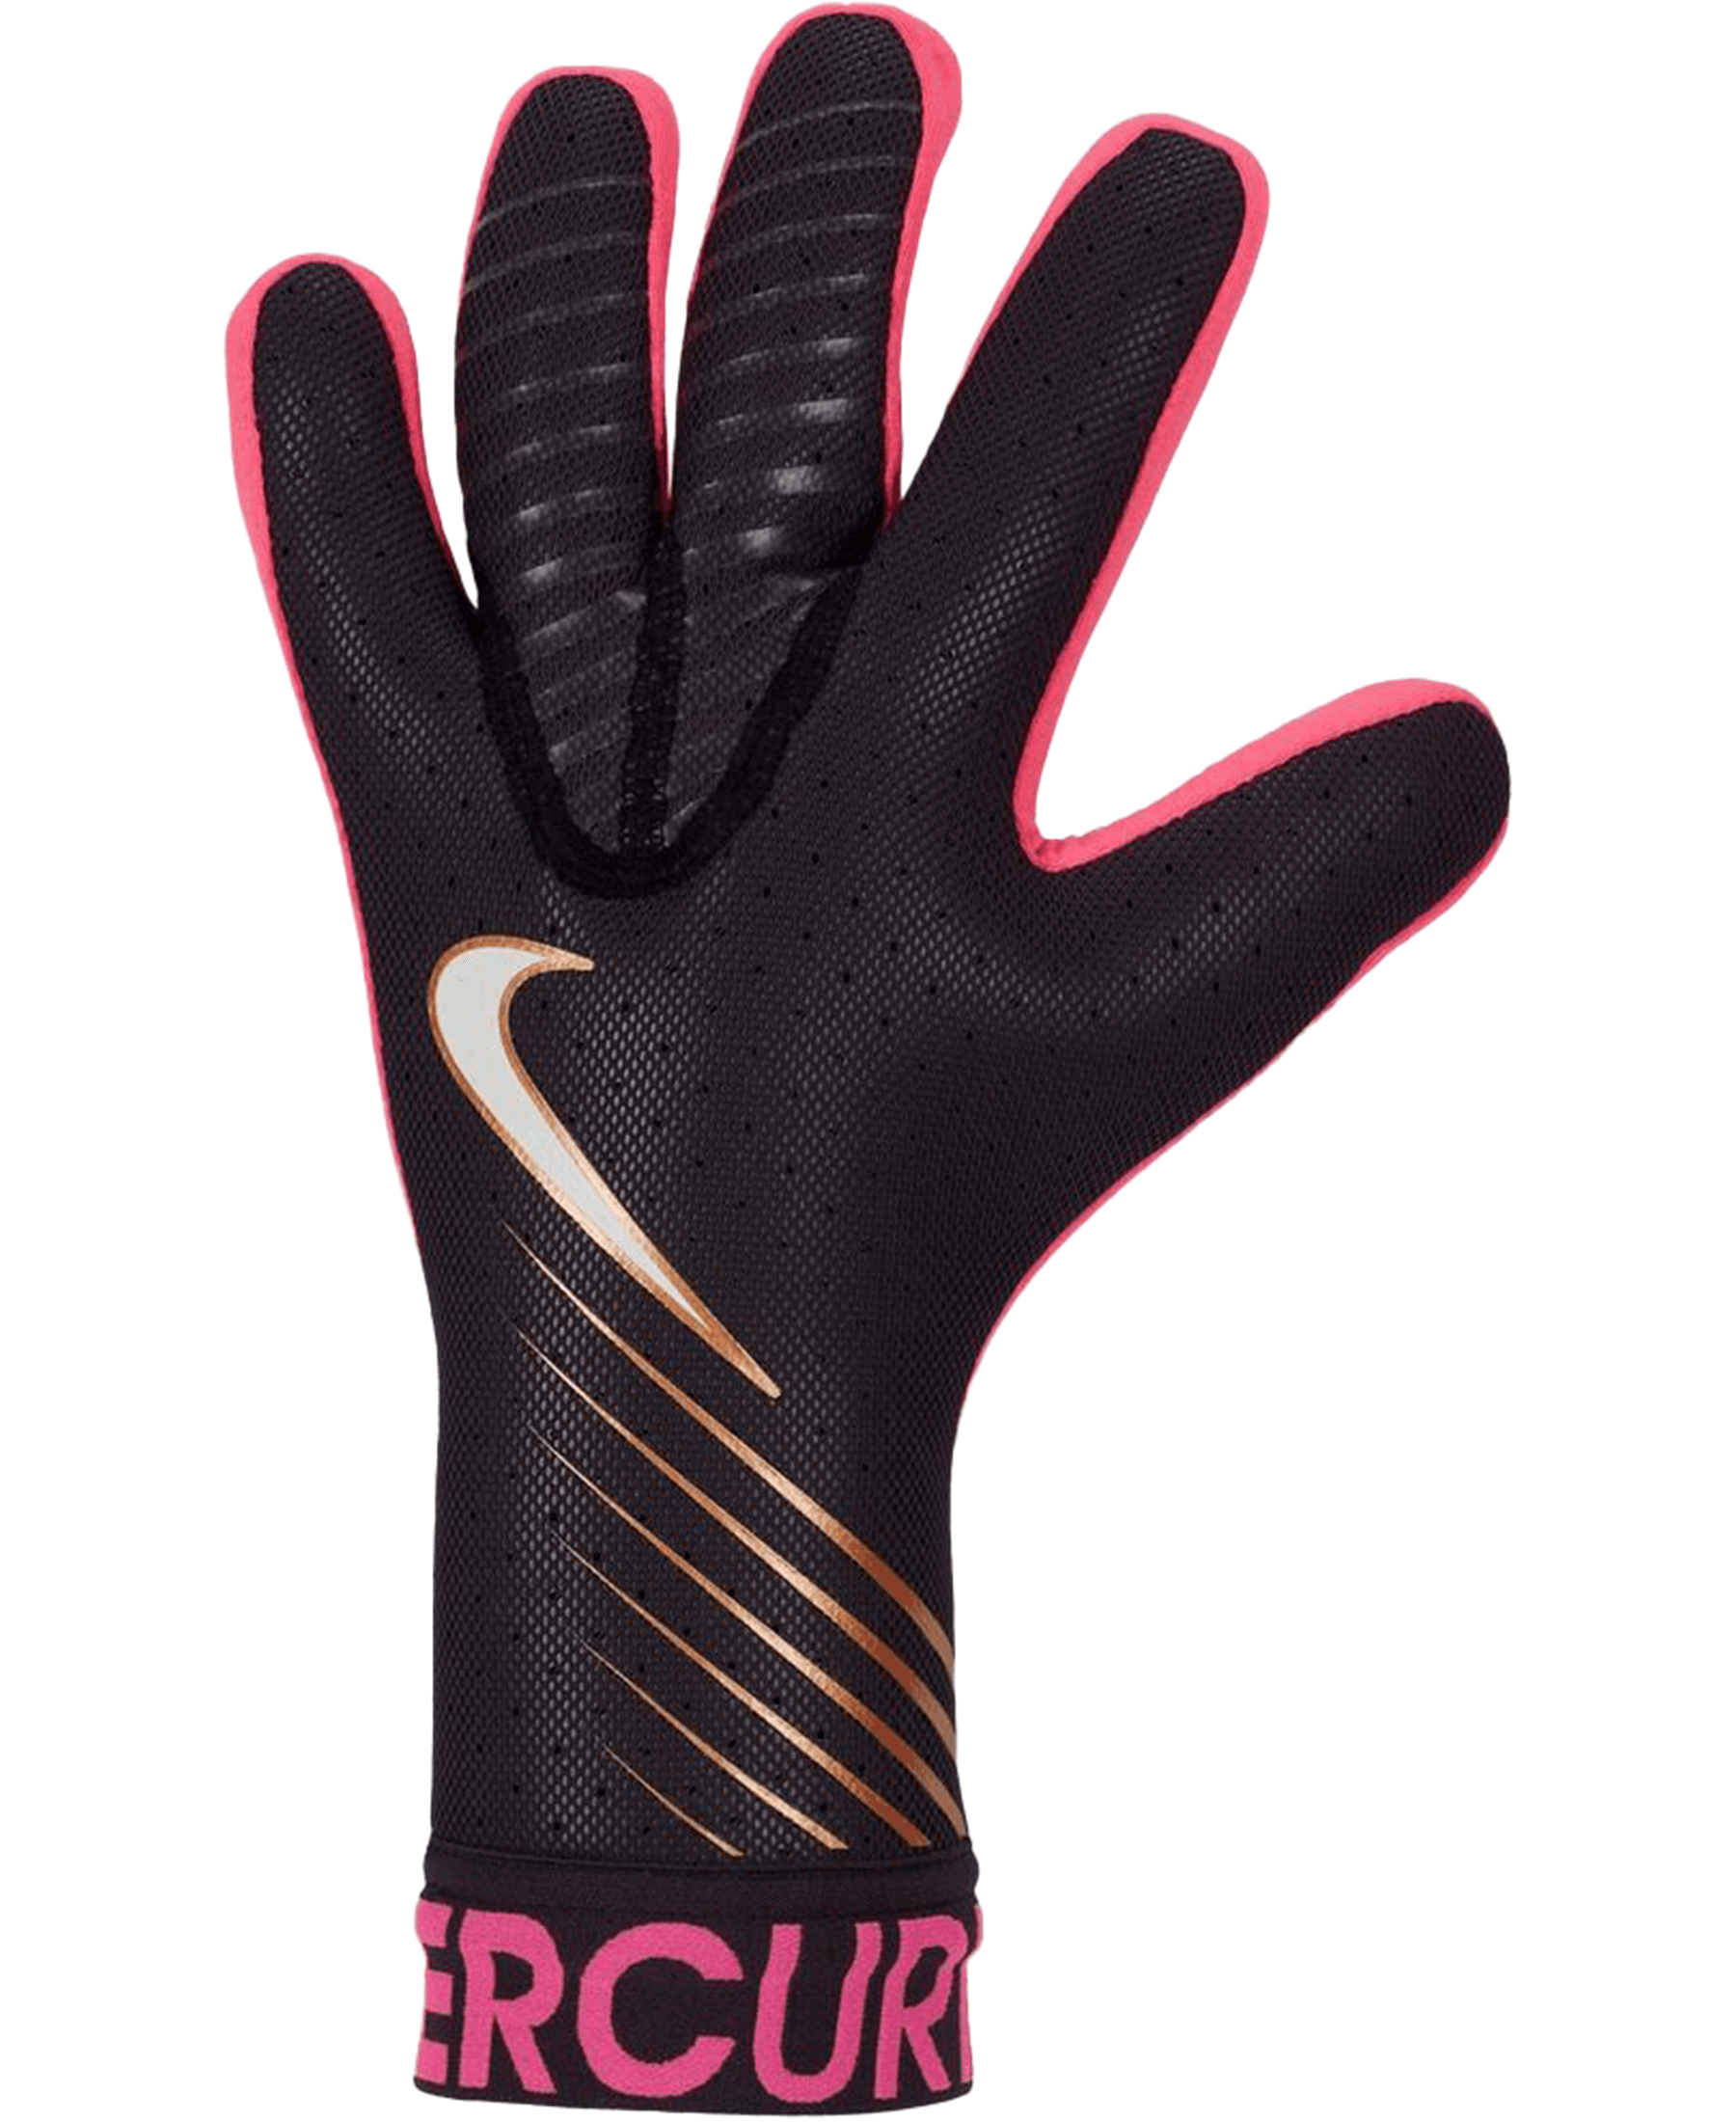 NIKE GK Mercurial Touch Elite Torwarthandschuhe - Hochwertige Fußball-Handschuhe für Torhüter. Optimiere deine Leistung mit exzellenter Passform, Flexibilität und Ballkontrolle. Jetzt bei SHOP4TEAMSPORT bestellen und von schneller Lieferung profitieren. Die besten Torwarthandschuhe für dein Spiel - jetzt erhältlich!